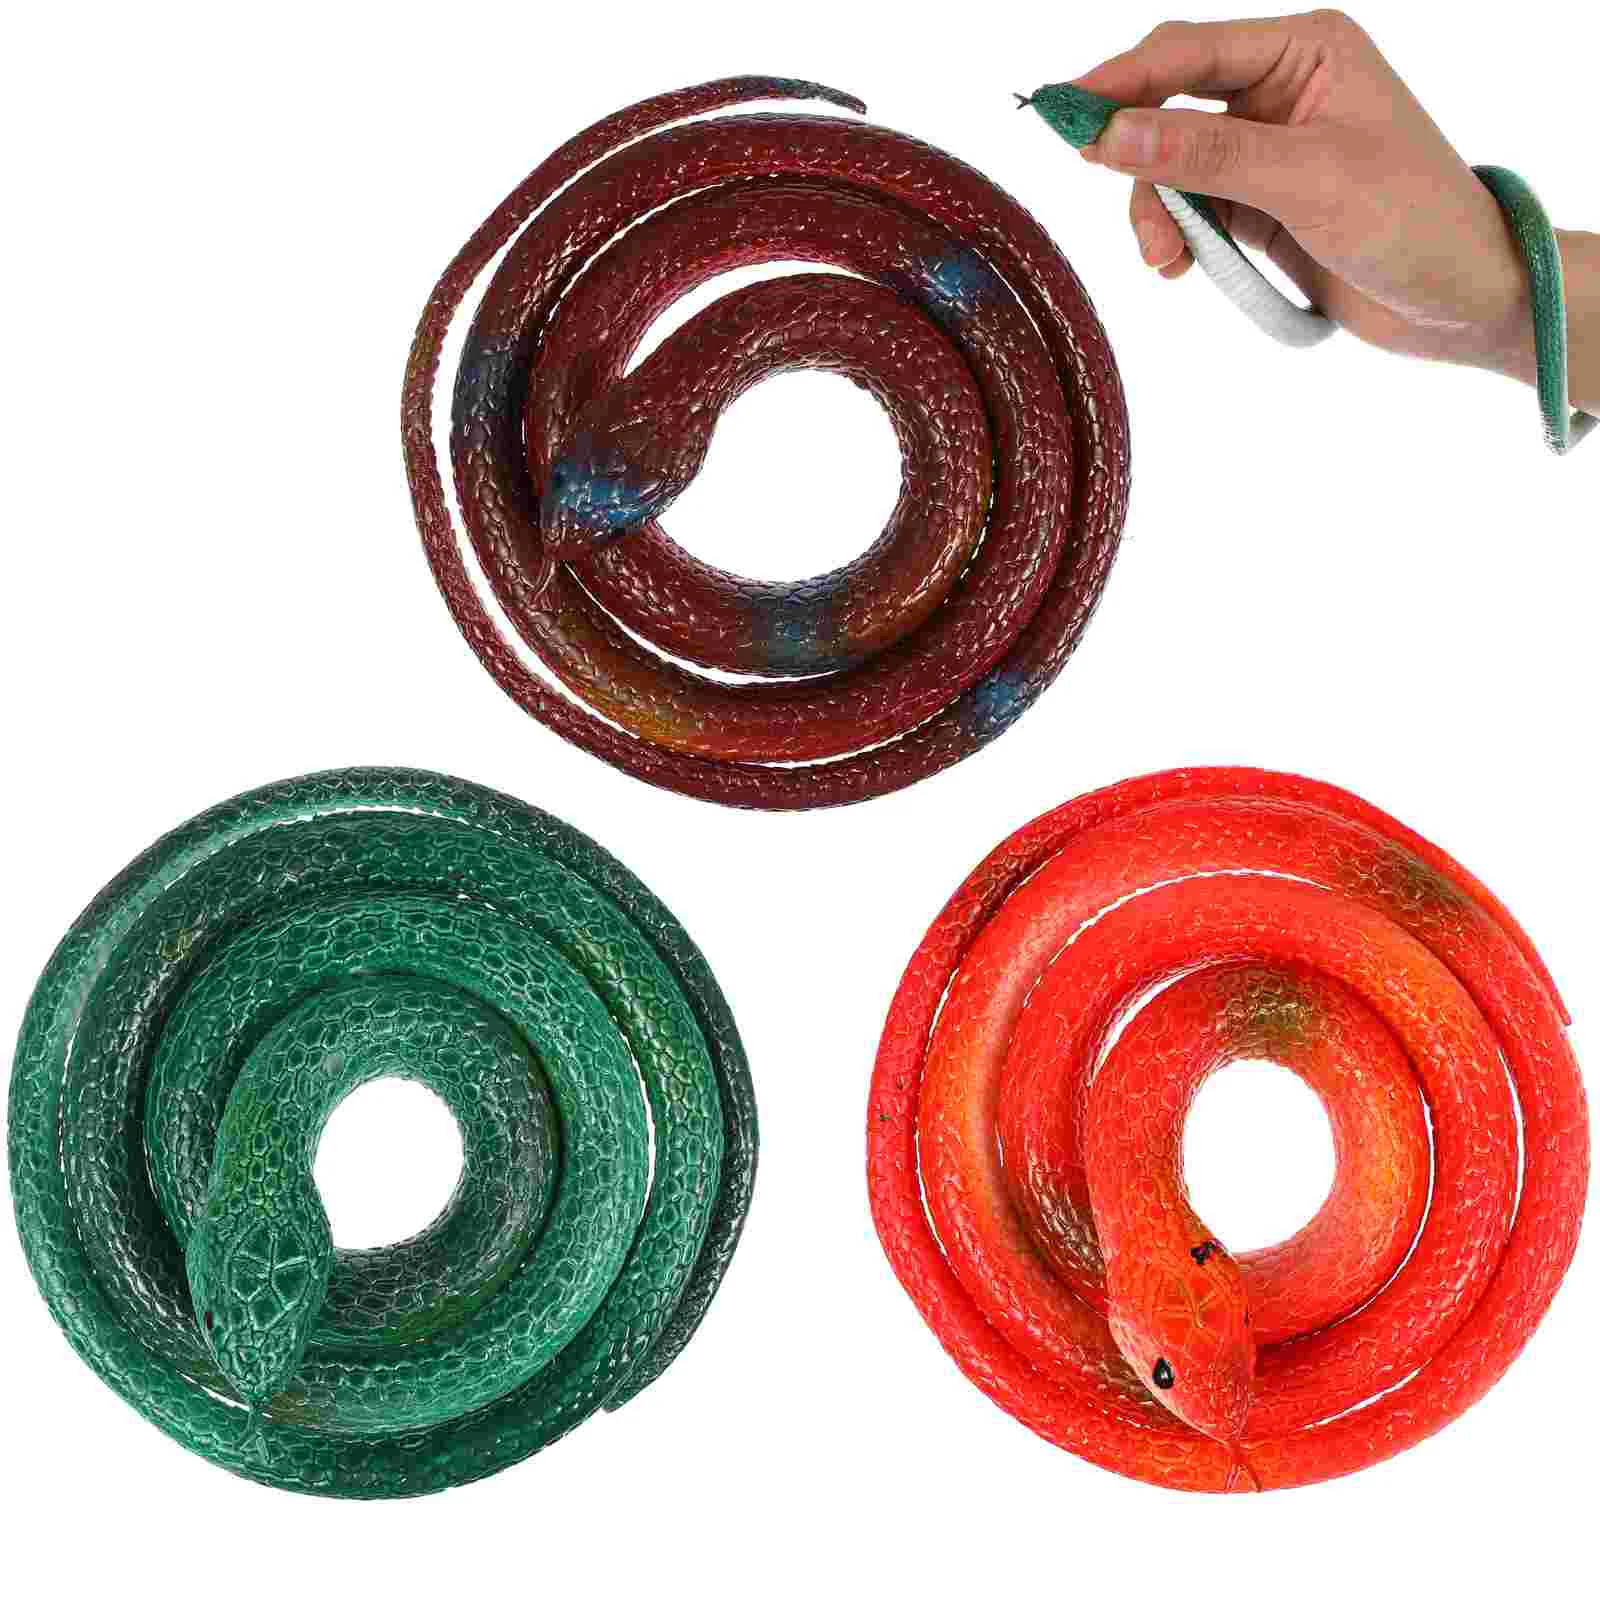 

6 шт., 75 см, Резиновые Искусственные змеи, искусственная игрушка для розыгрыша, искусственная игрушка для детей (случайный стиль), забавные игрушки